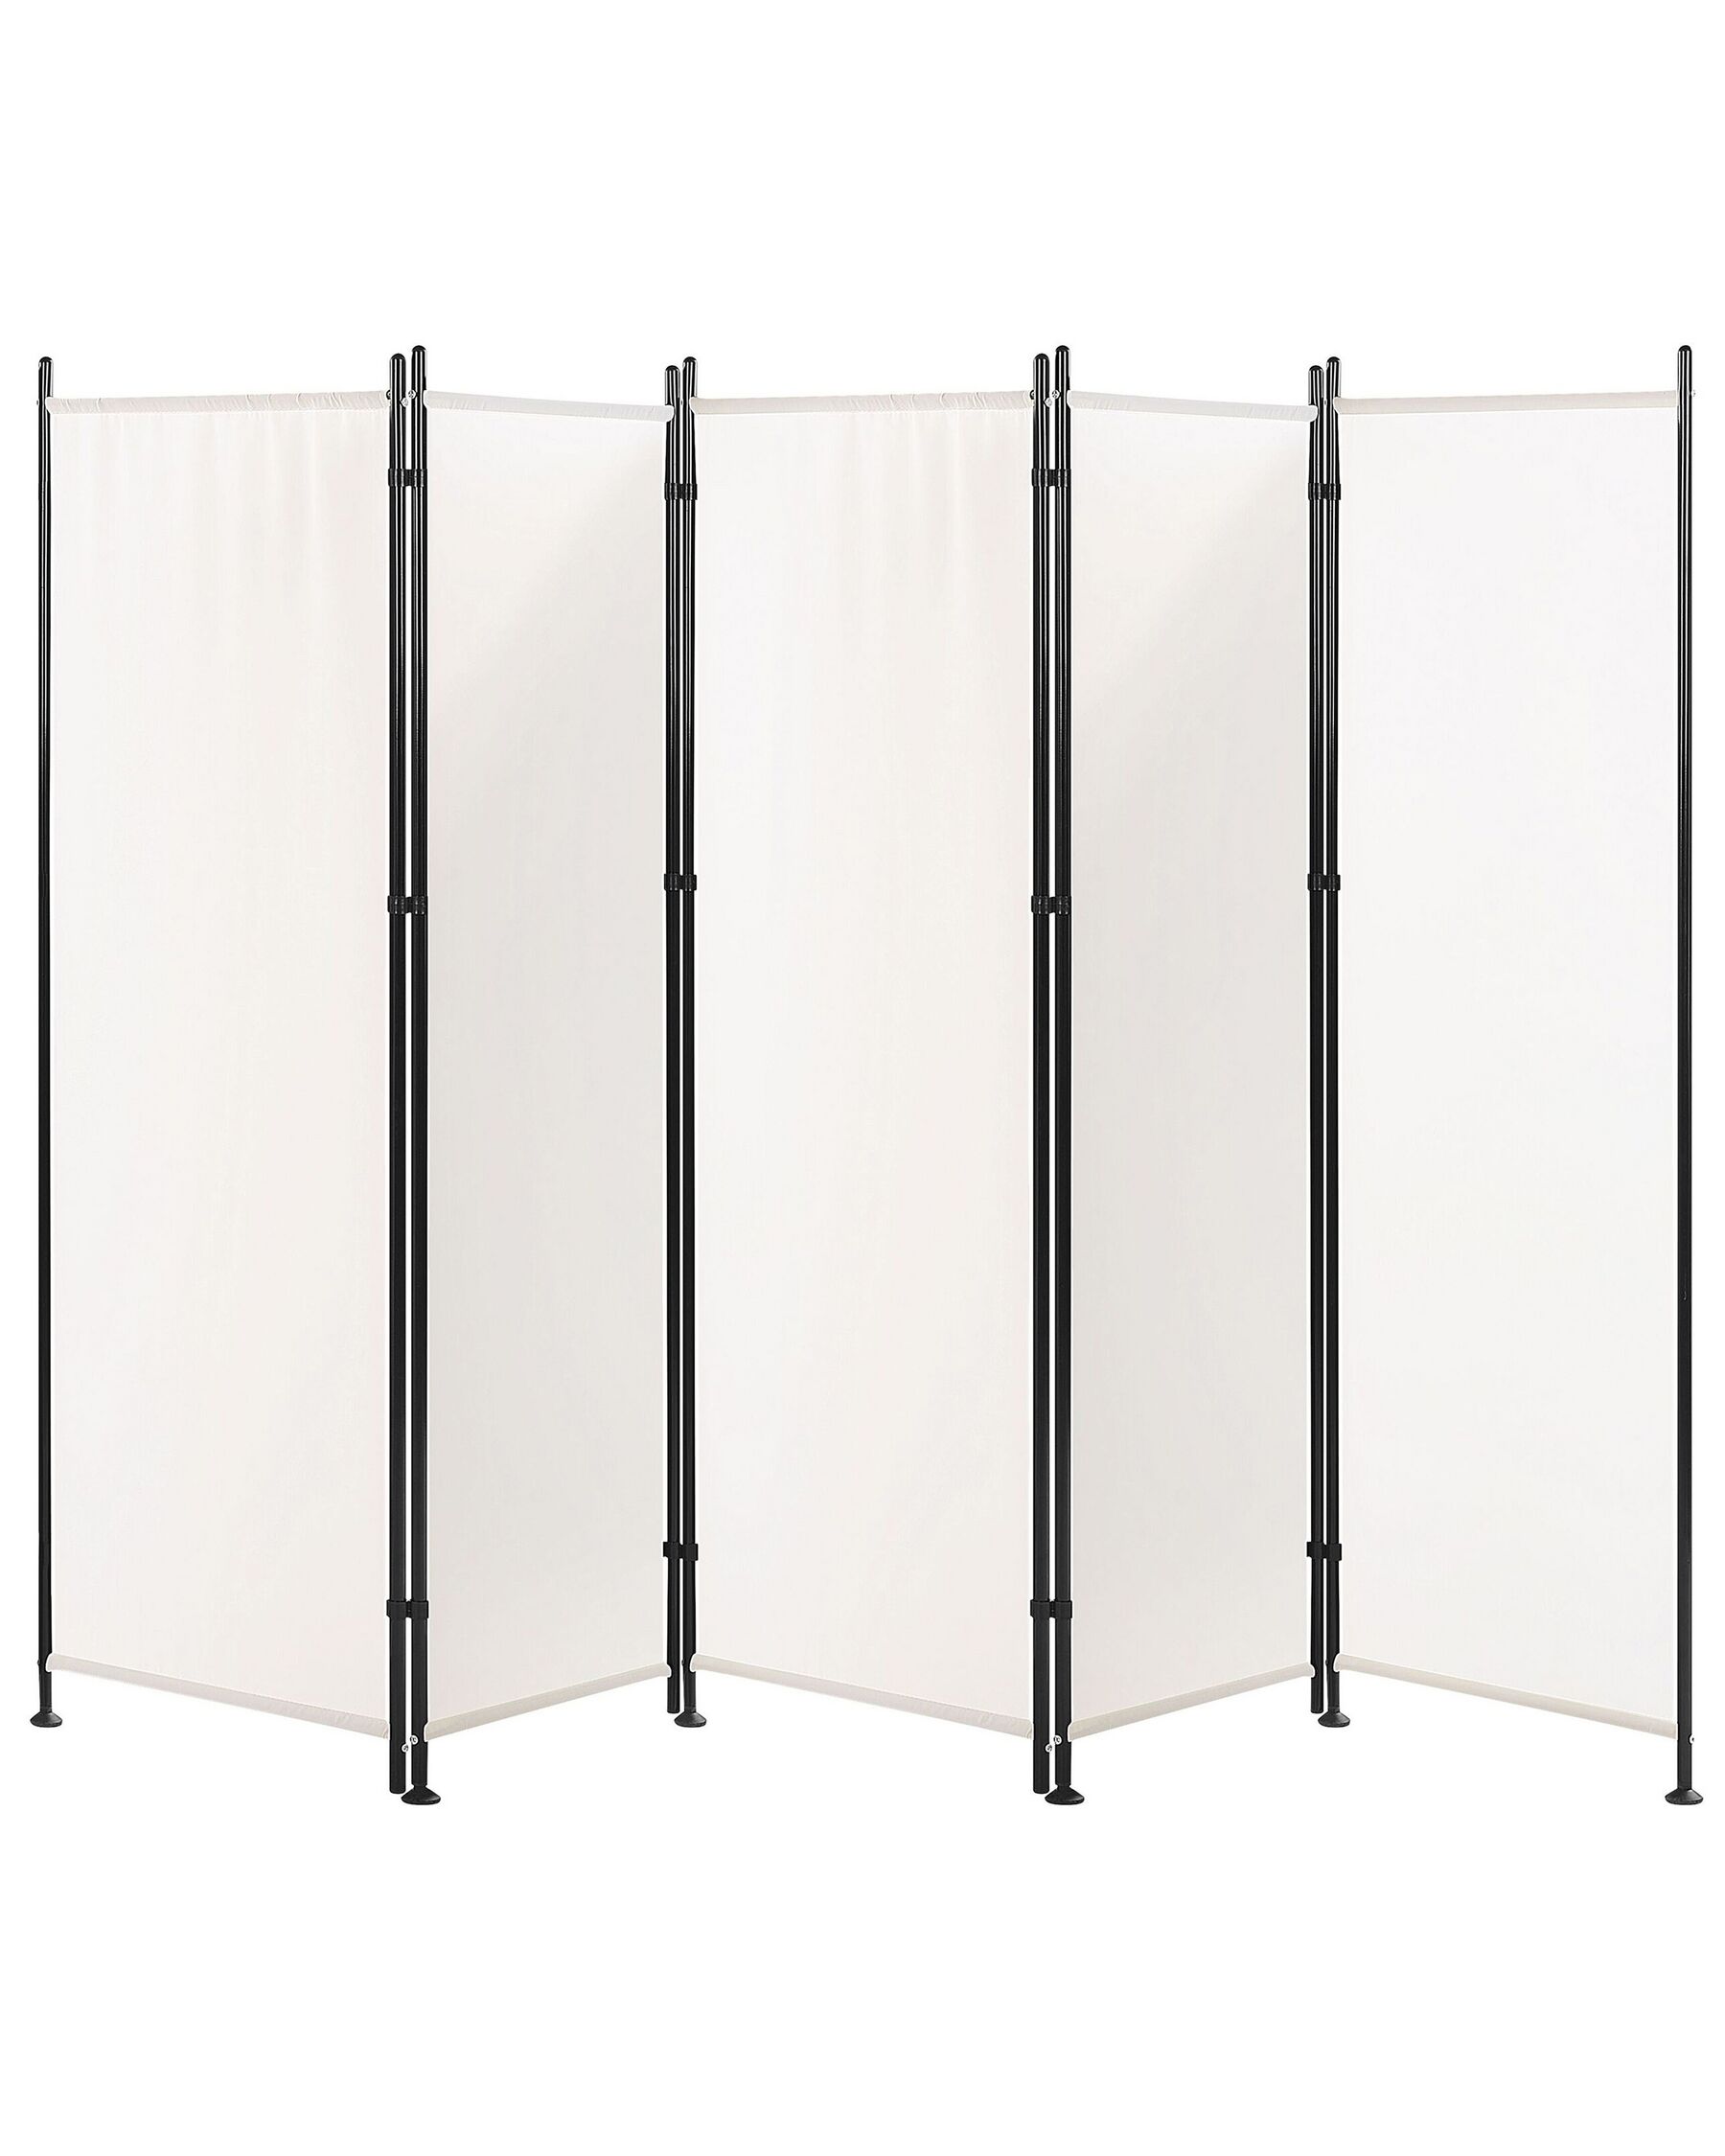 Folding 5 Panel Room Divider 270 x 170 cm White NARNI_802627